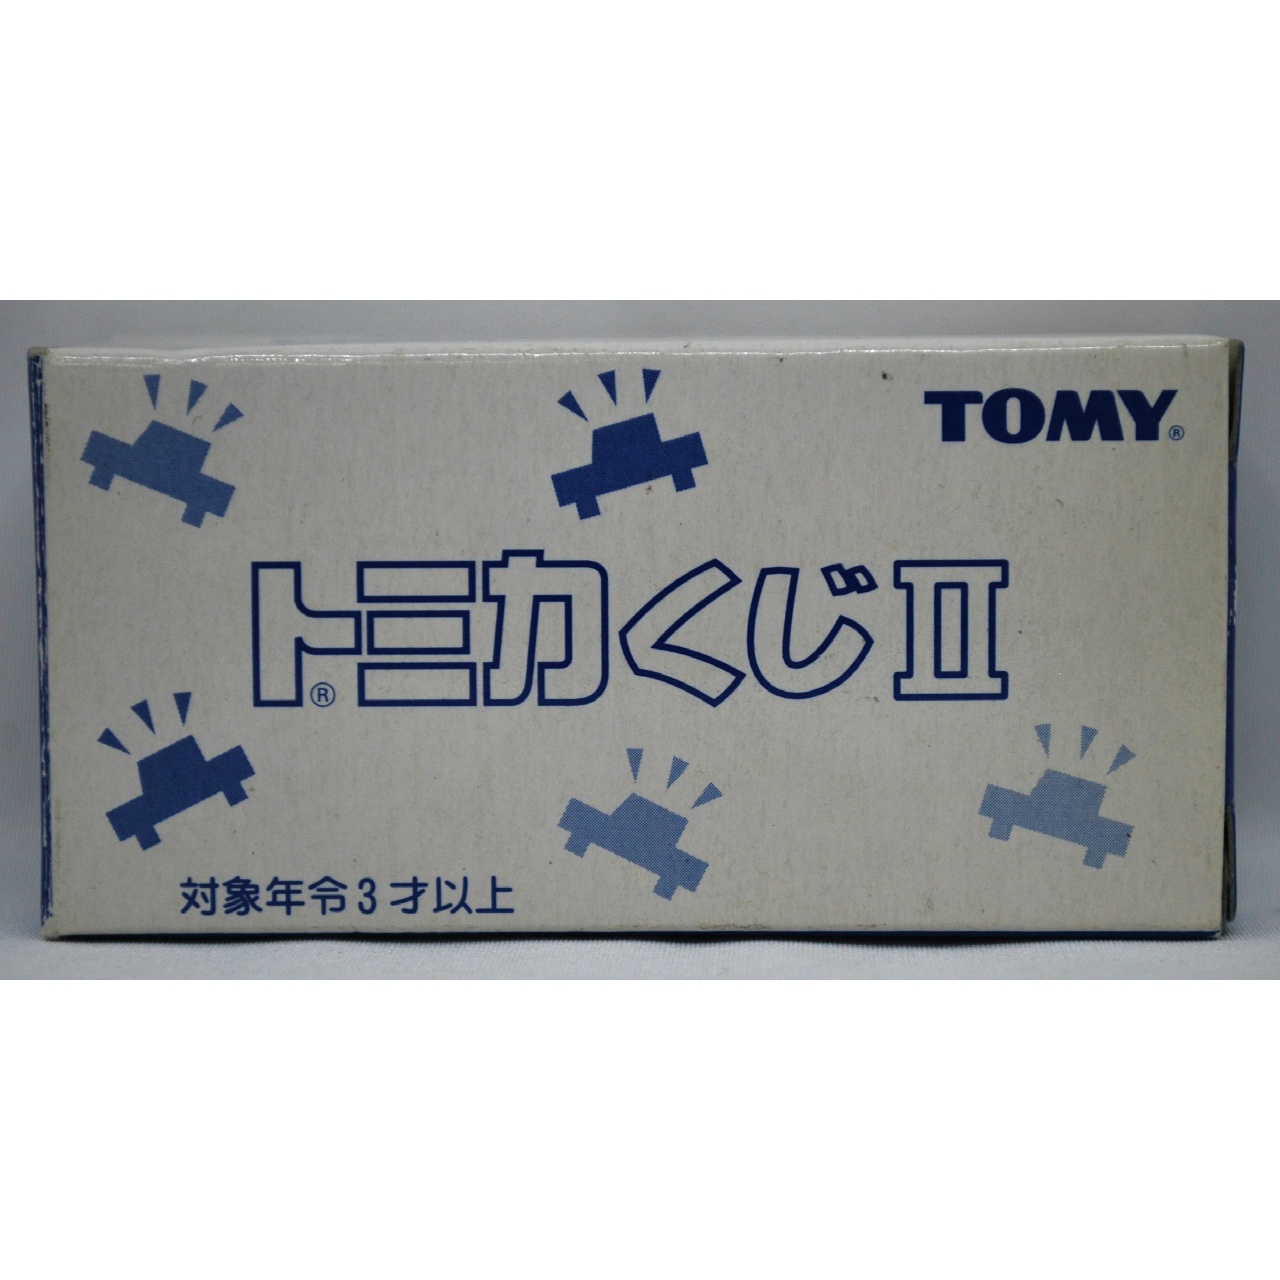 トミー トミカくじ2 1/57 シトロエン 2CV(ピンク×パープル)